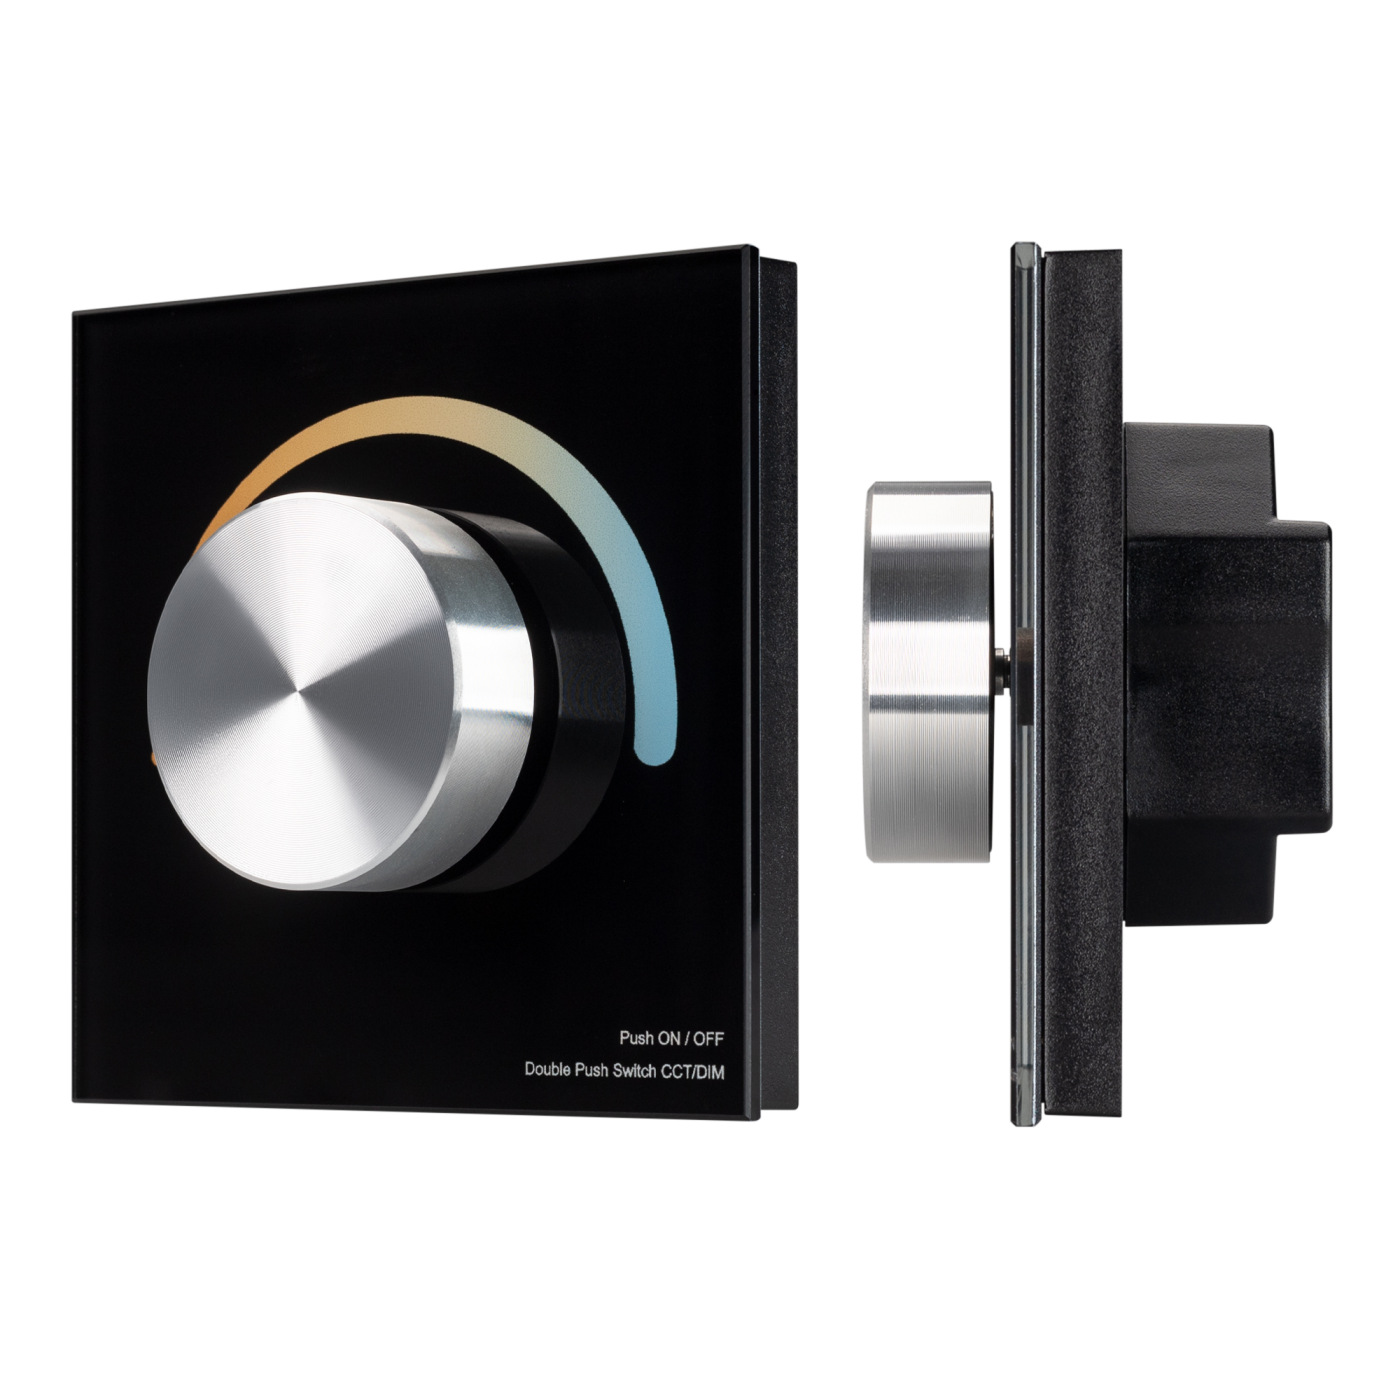 Панель SMART-P2-MIX-G-IN Black (3V, Rotary, 2.4G) (Arlight, IP20 Пластик, 5 лет) набор для крепления стеклянной дверки двустворчатой 90 мм пластик чёрный